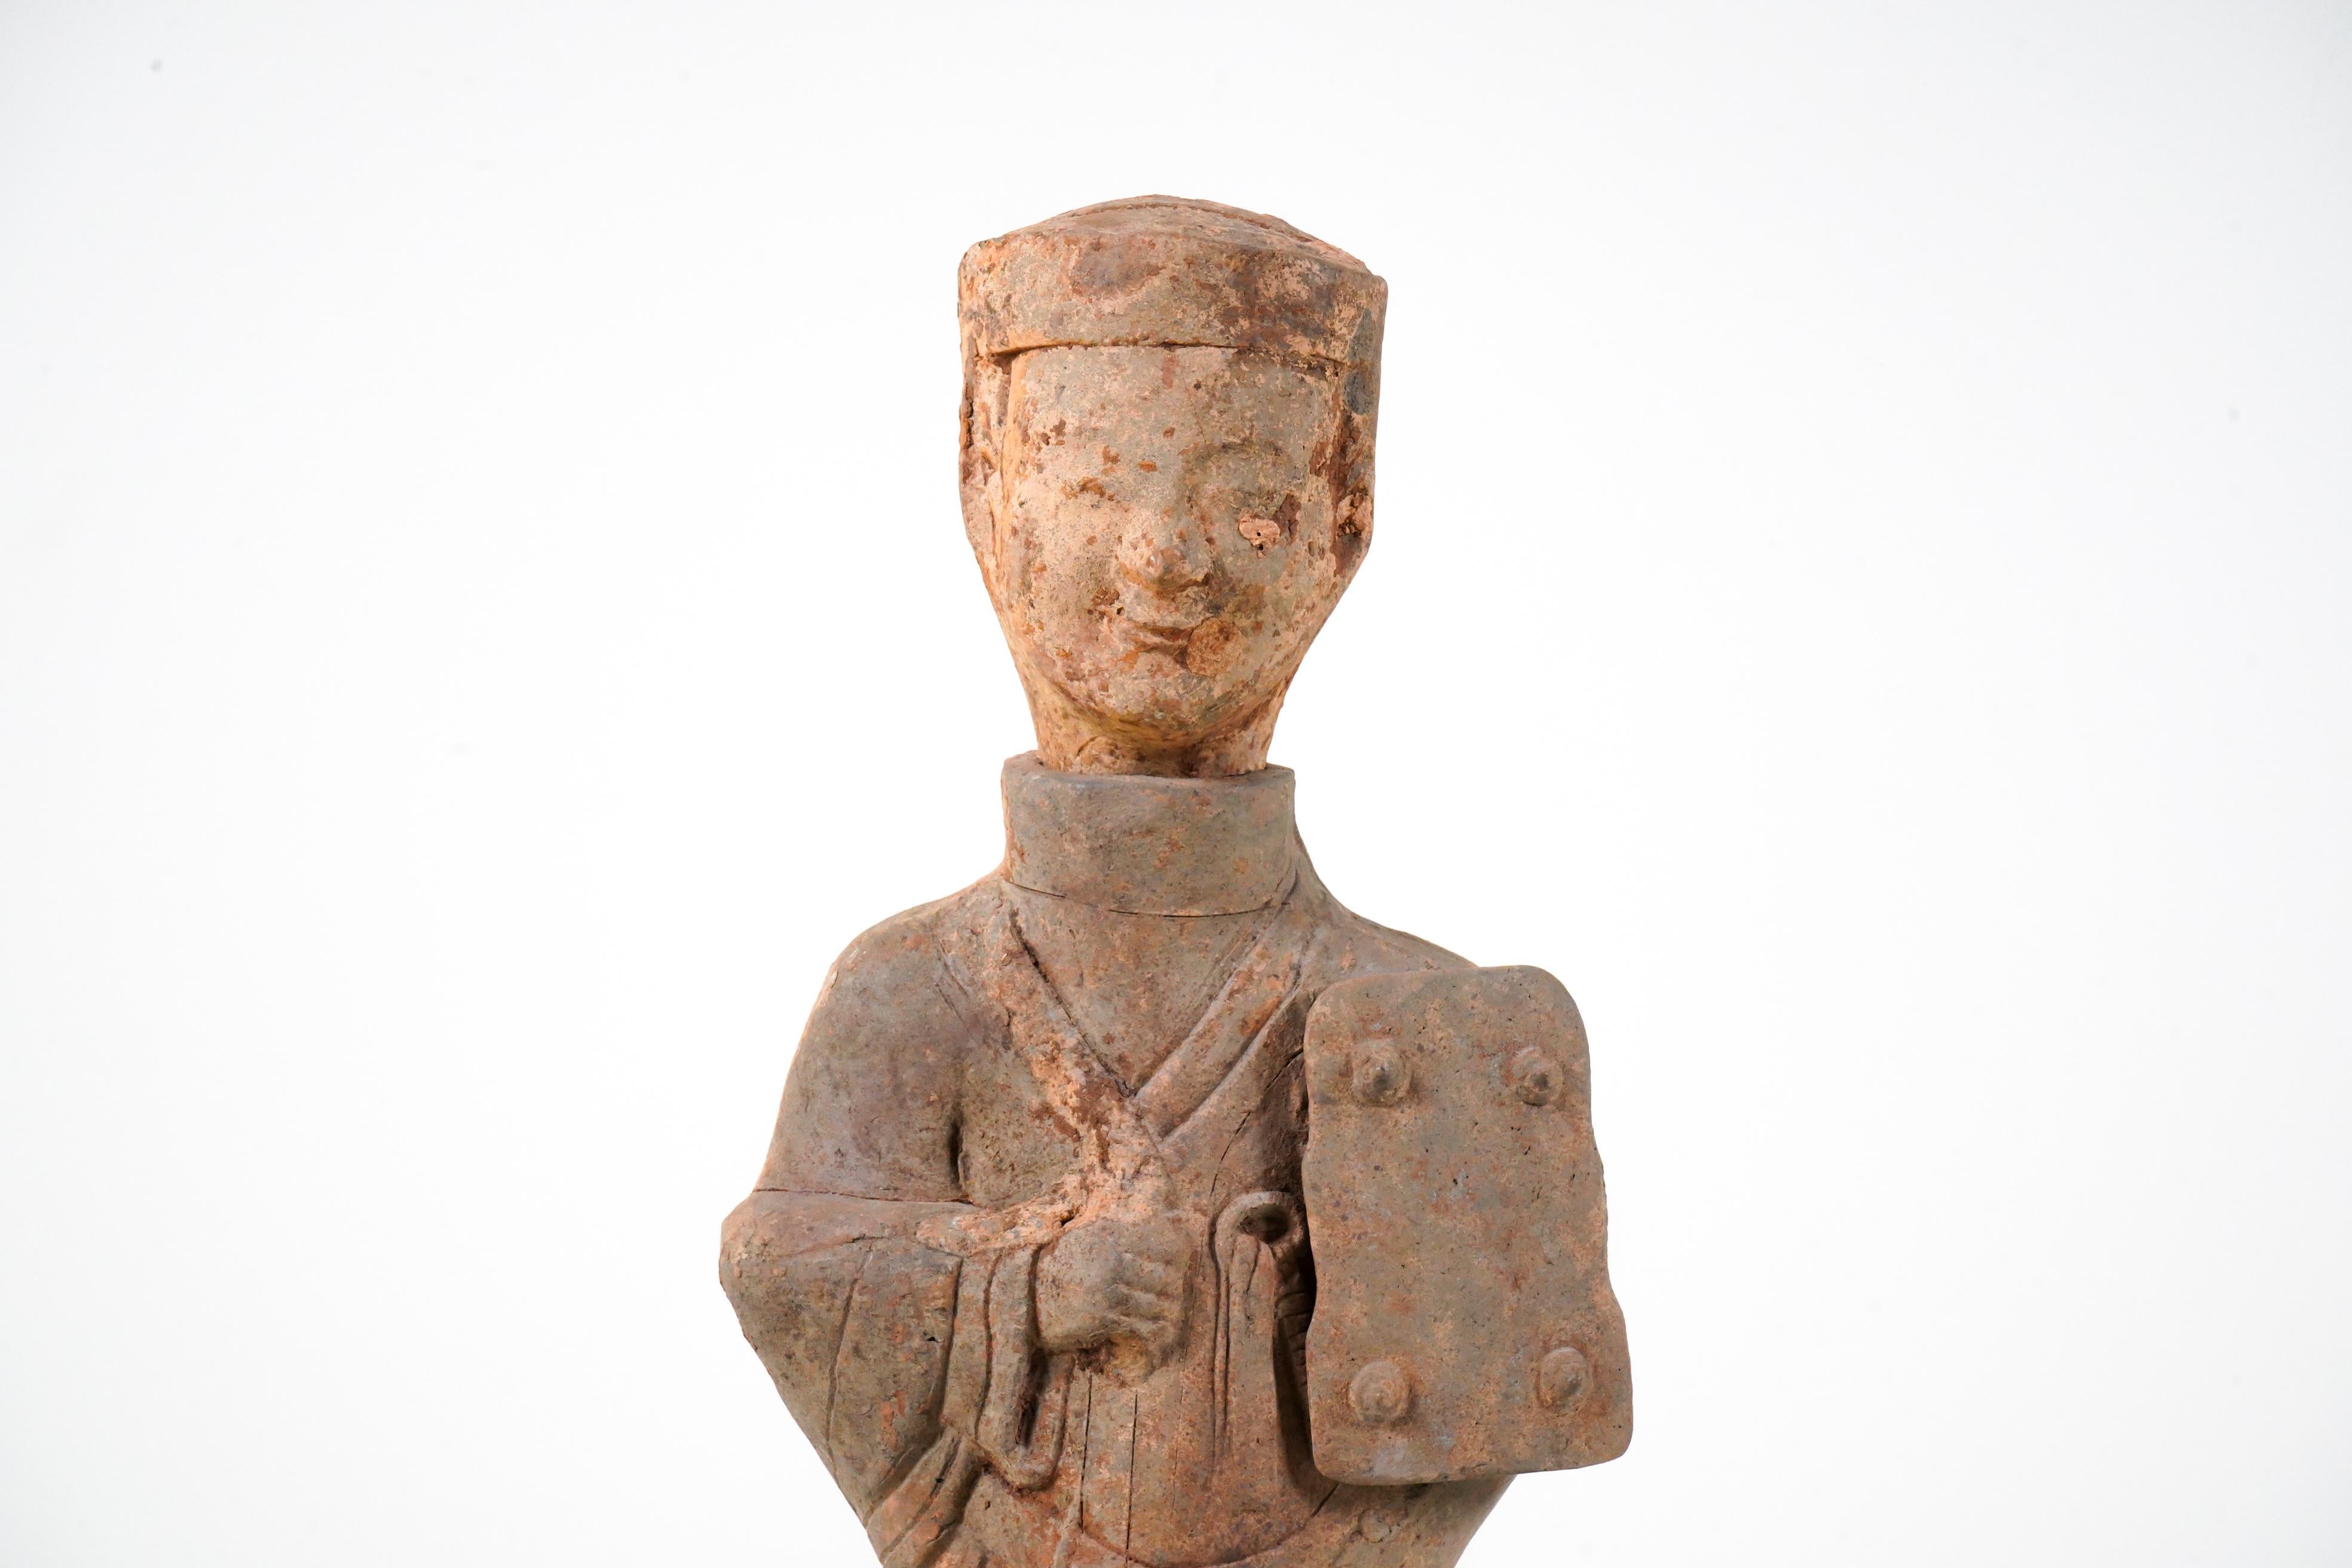 Grand personnage funéraire chinois en terre cuite (Ni Yong) de la dynastie des Han orientaux (25-220 ADS), probablement originaire de la région de l'actuel Sichuan. Elle semble représenter un marié en costume d'apparat, harnais à la main. Avec un